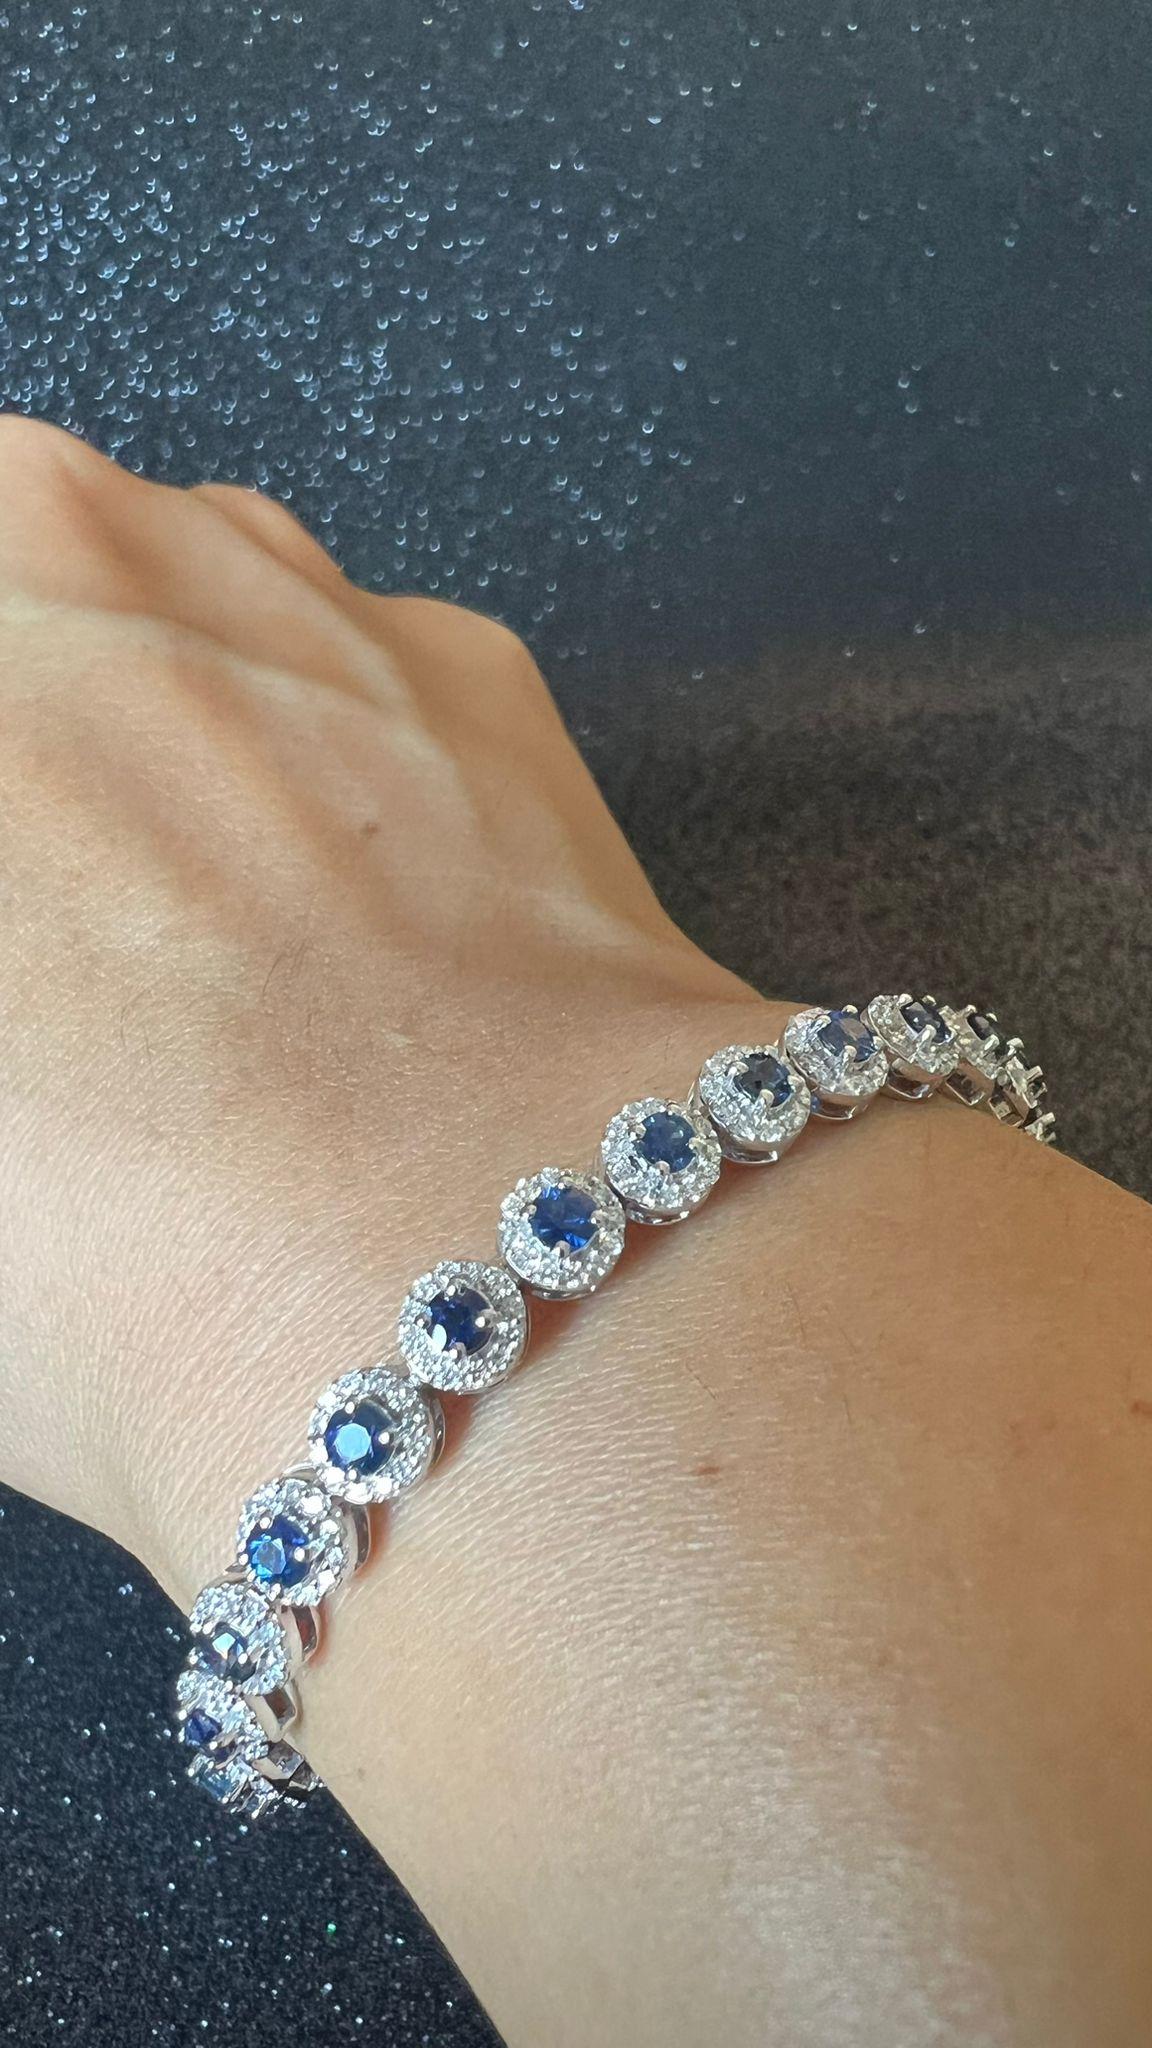 Bracelet de tennis avec diamants formant un halo sur des saphirs bleus naturels
longueur totale de 7 pouces
Ce bracelet contient 4,20 carats de saphirs de Ceylan triés à la main. 
1,76 carats de diamants naturels sélectionnés à la main, de pureté VS